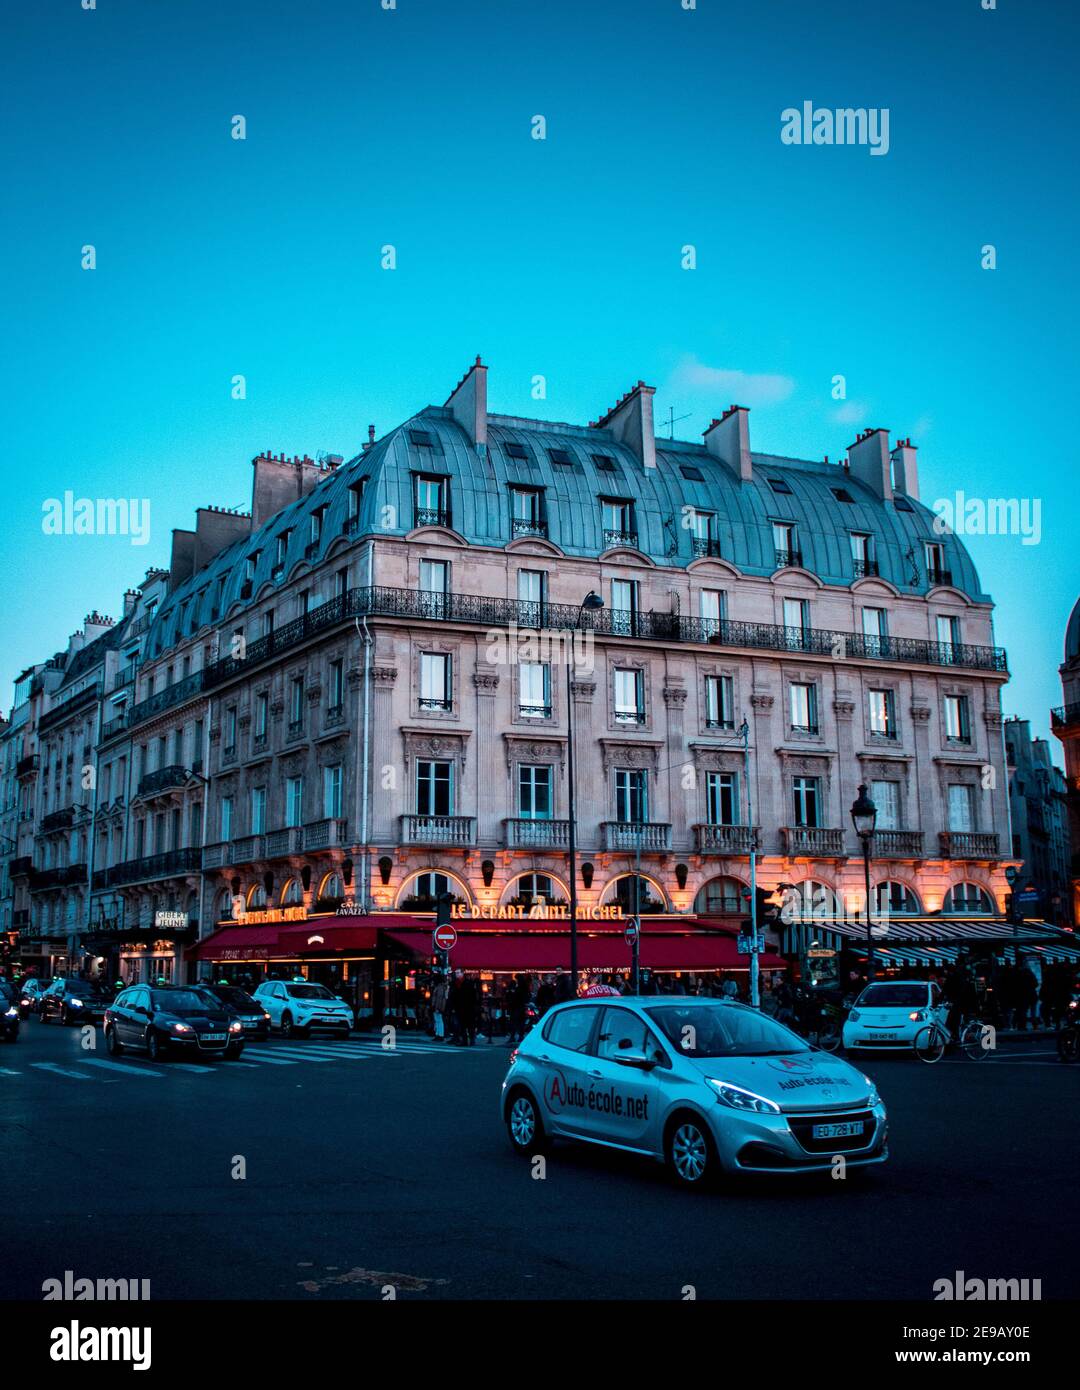 PARIS, FRANKREICH - 17. Jul 2018: Ein Löwe, der durch Paris geht, ganz Frankreich in einer Ecke. Die Saint Michel U-Bahn-Station, und ein Nationalwagen Reisen Stockfoto